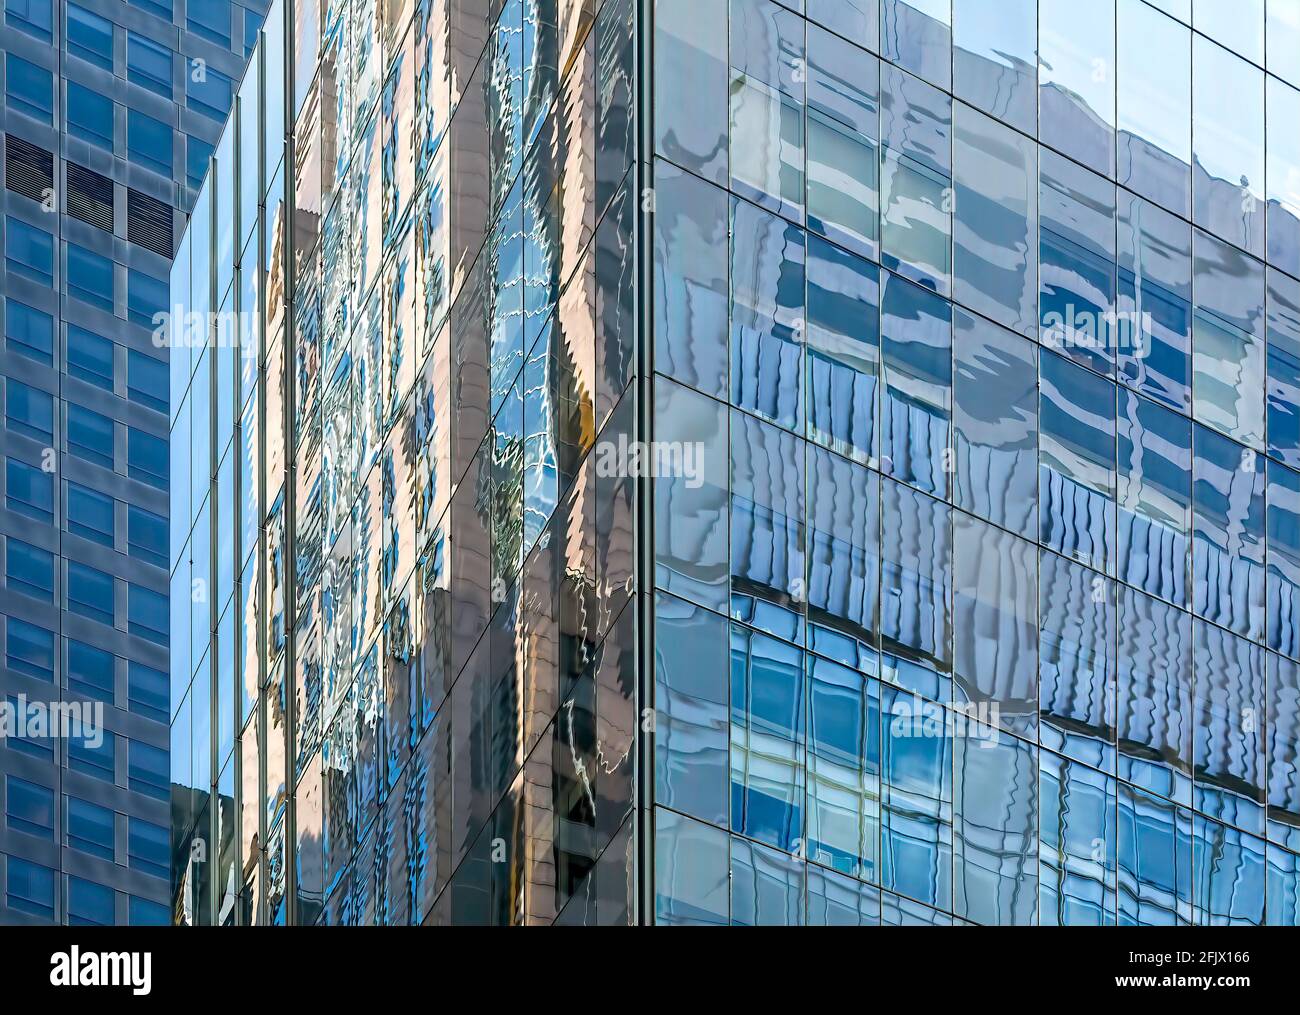 Griglie in vetro riflettente e acciaio nei grattacieli degli uffici di New York City. Foto Stock